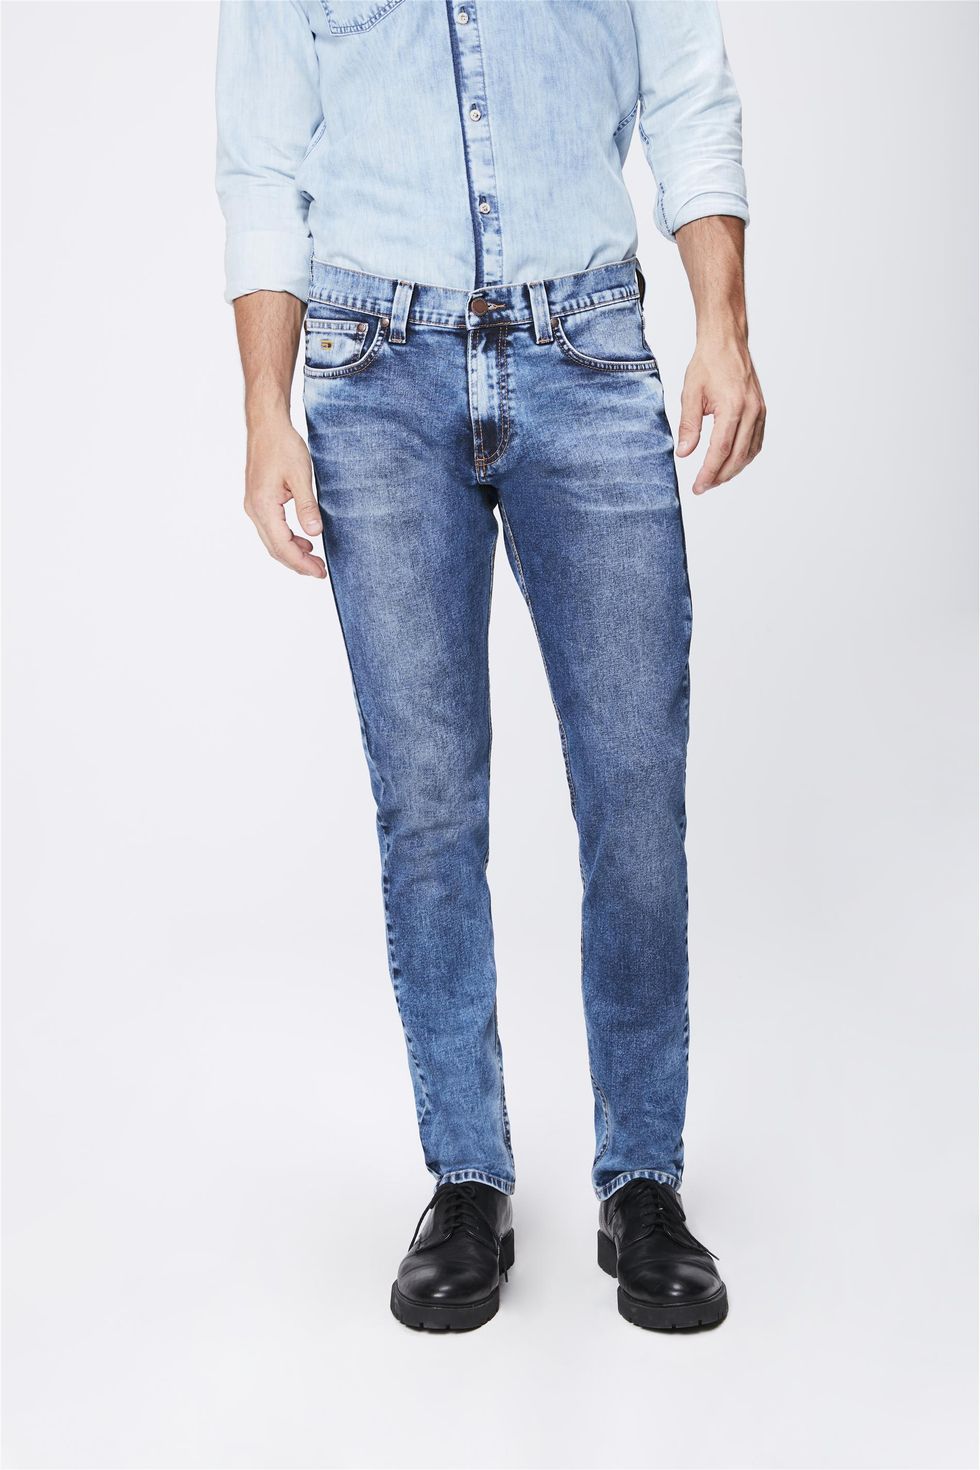 calca masculina jeans clara